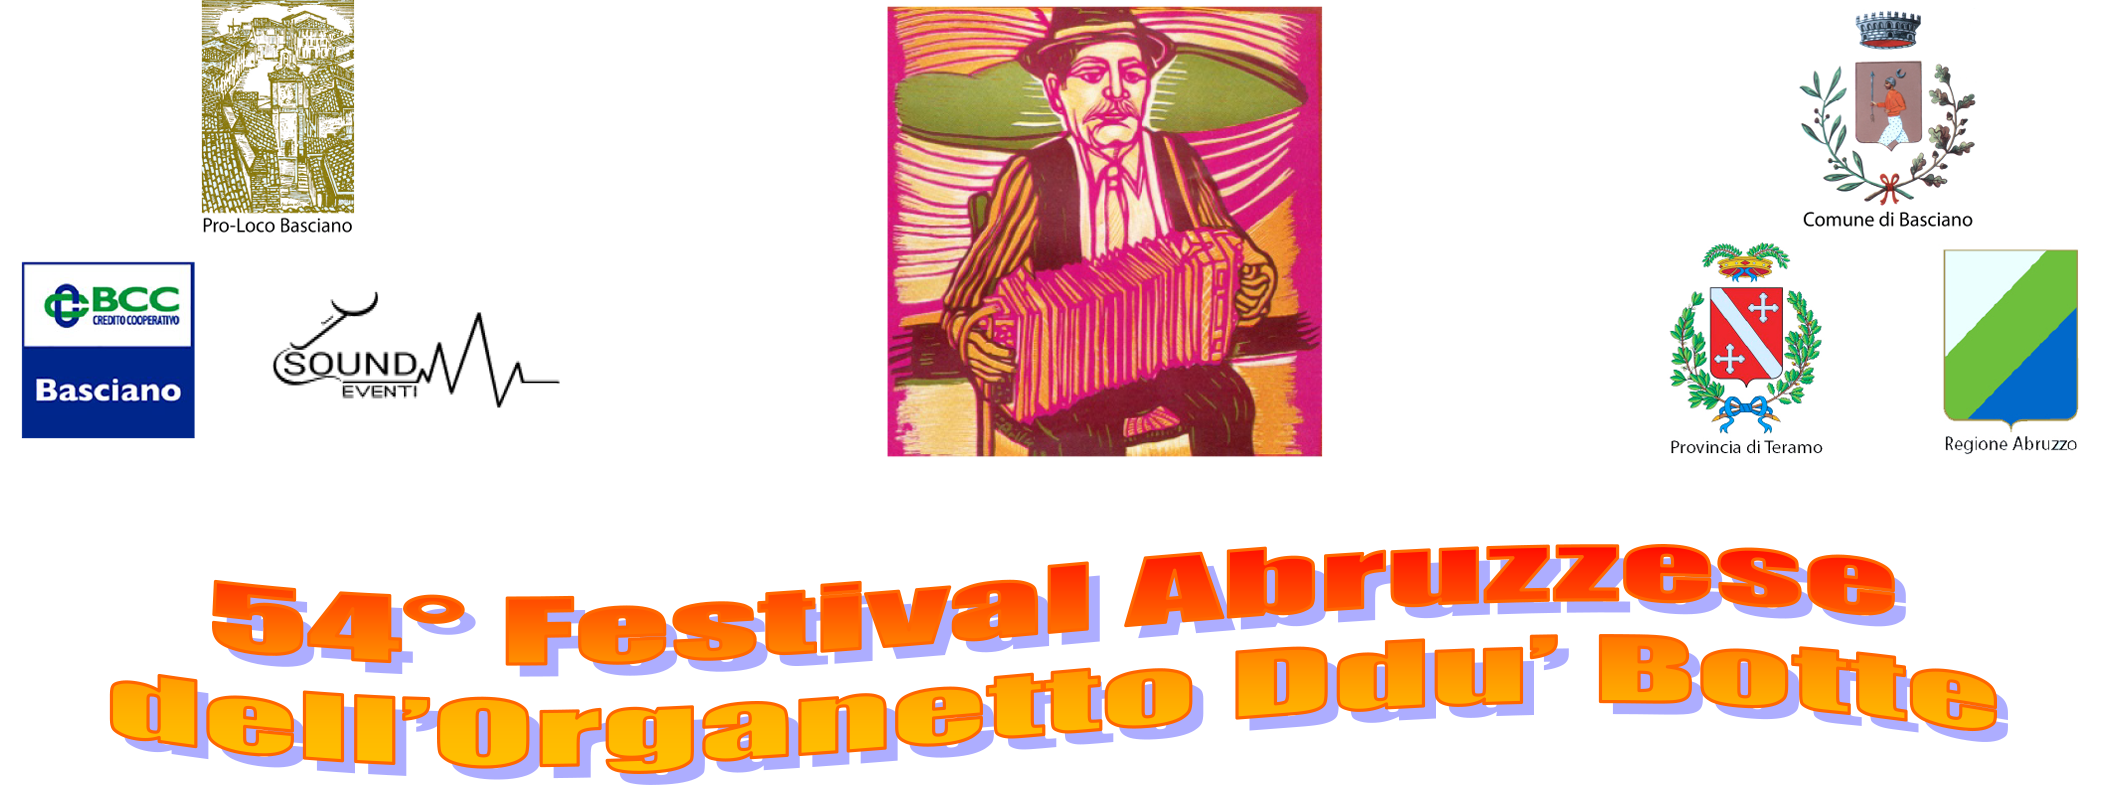 54° Festival Abruzzese Dell'Organetto Ddu' Botte di Basciano"